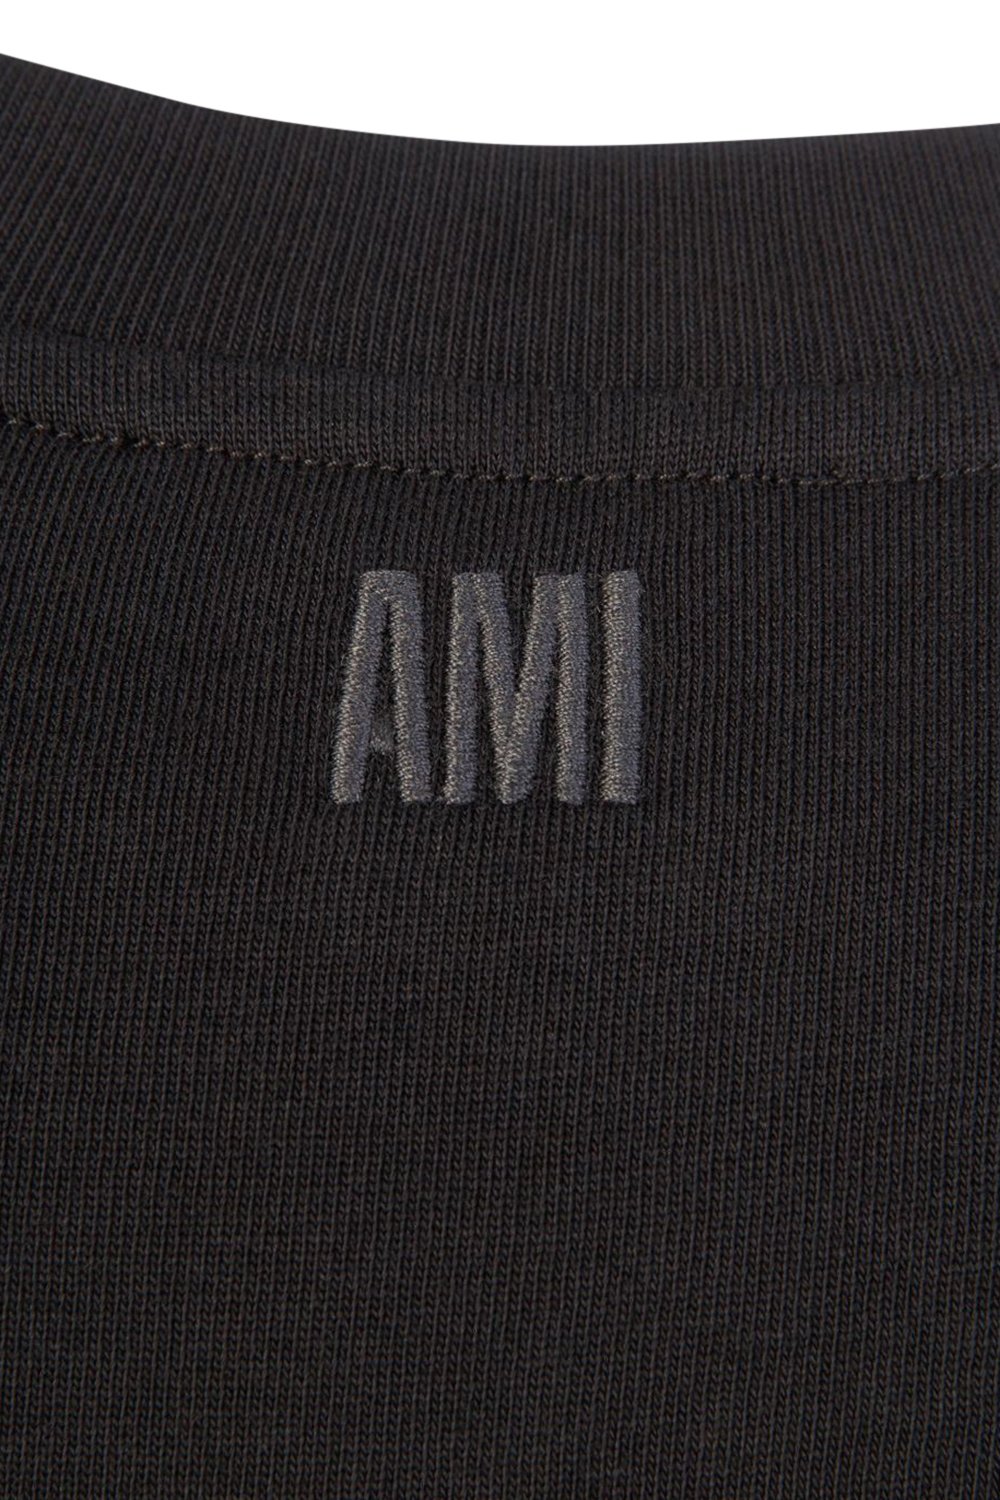 Men's Black Ami Paris 'Ami De Coeur' T-Shirt